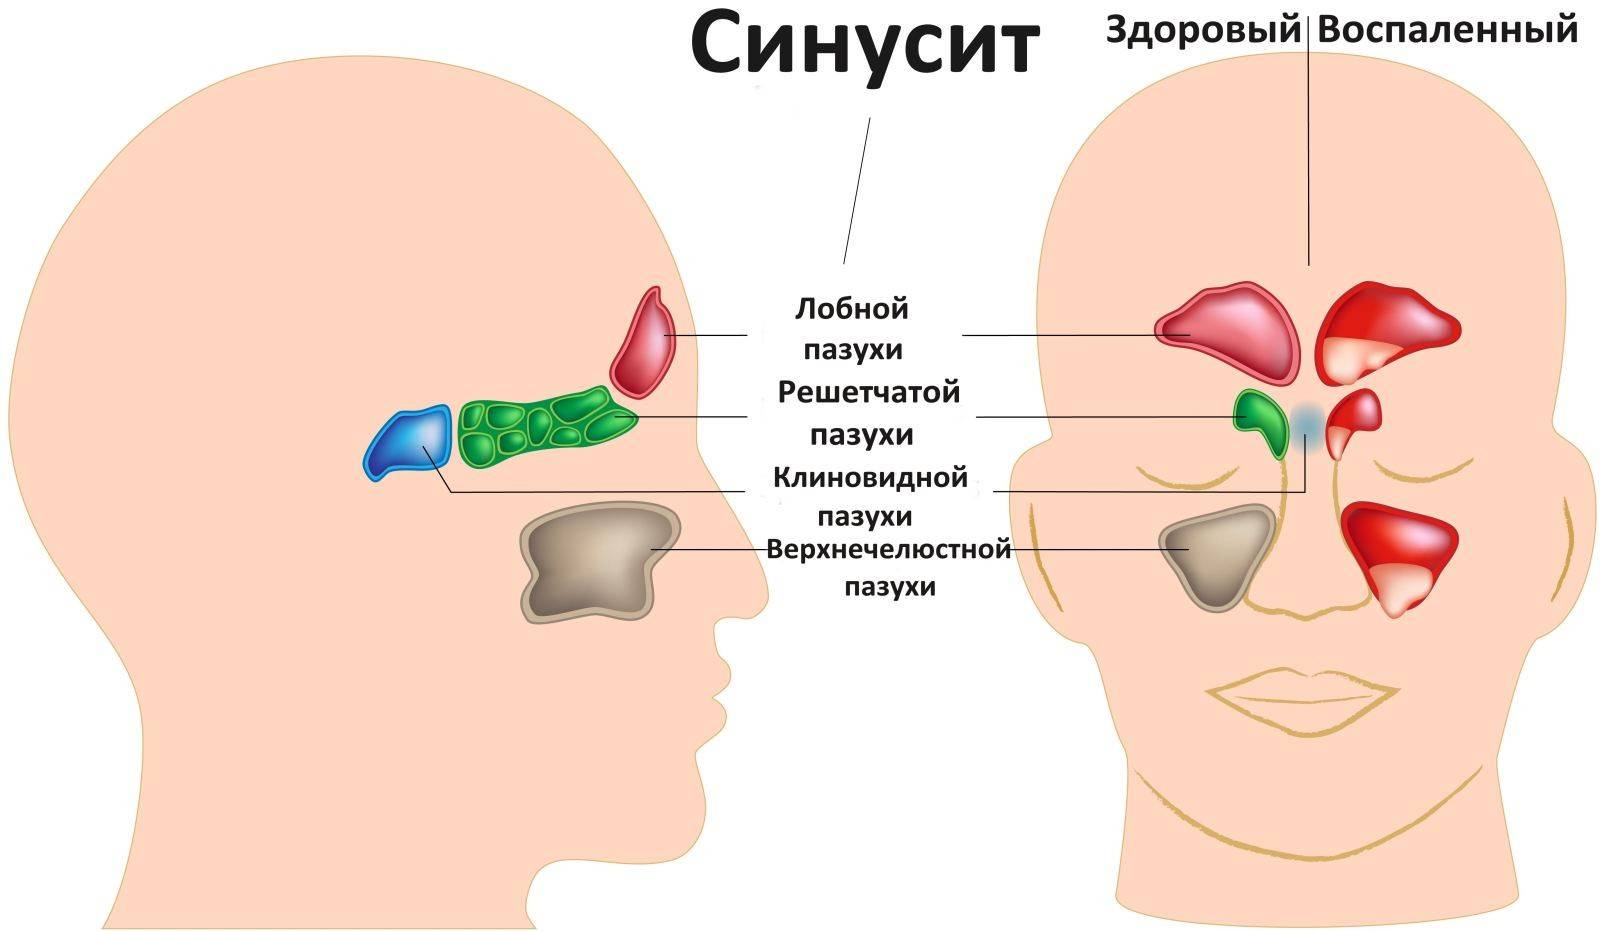 Болячки под носом: лучшие способы лечения